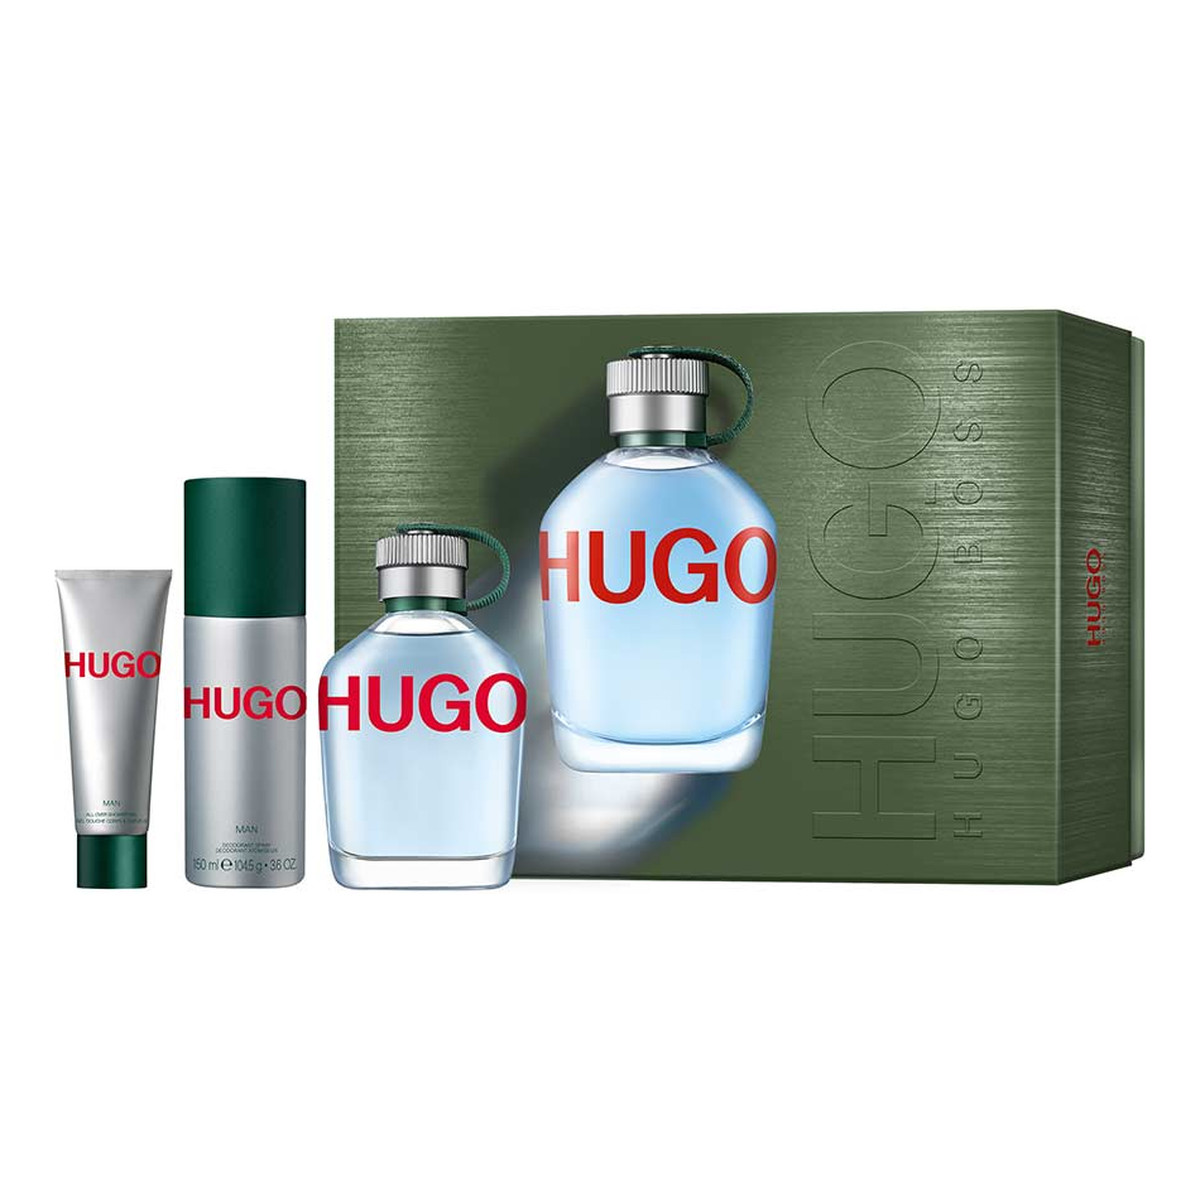 Hugo Boss Hugo Man Zestaw woda toaletowa spray 125ml + dezodorant spray 150ml + żel pod prysznic 50ml